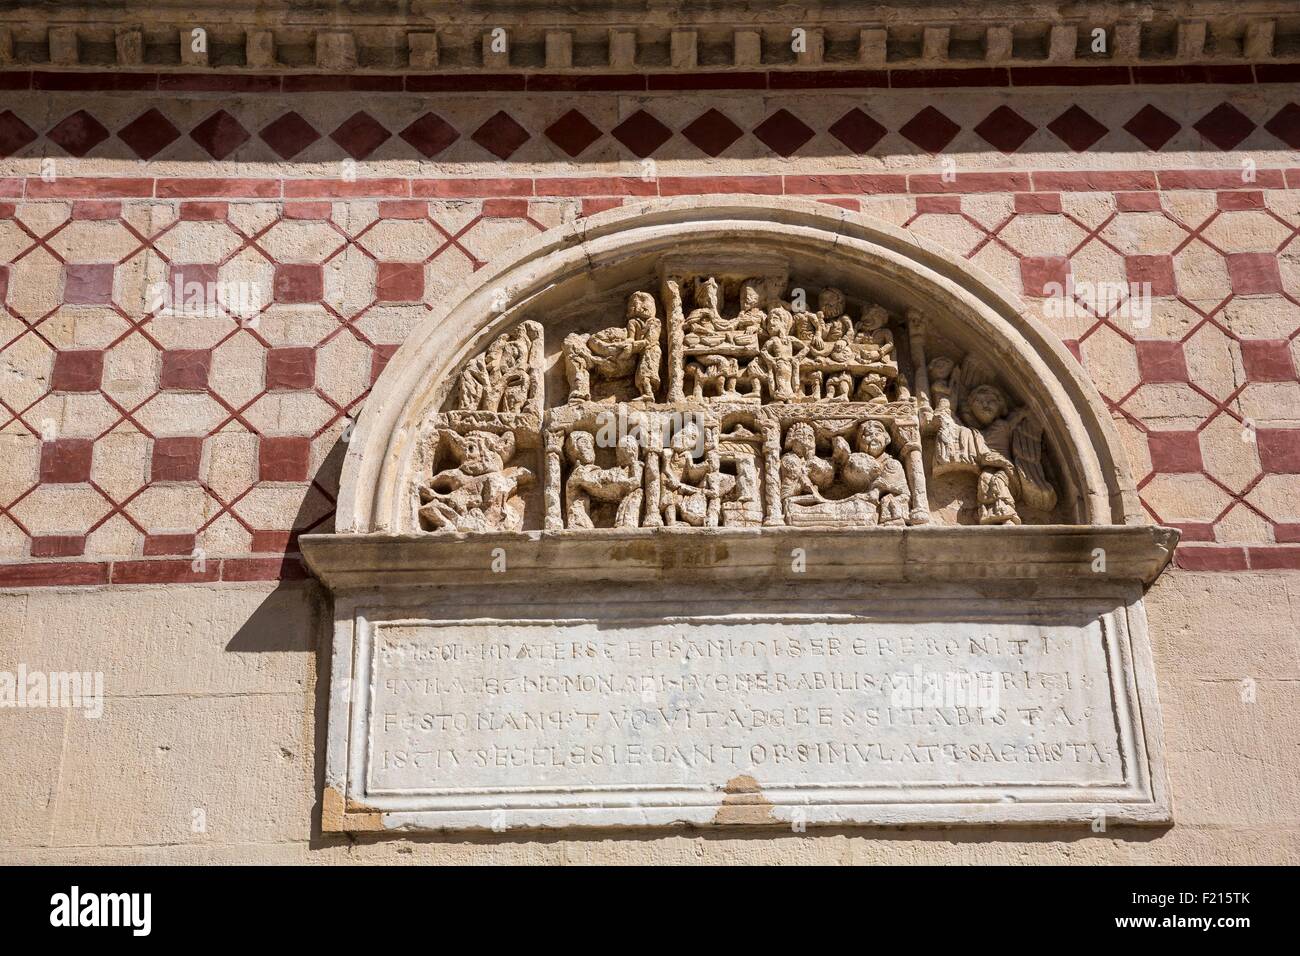 France, Rhône, Lyon, site historique, bas-relief, St Martin d'Ainay Basilique ancienne église abbatiale de style roman (Xiième siècle) Banque D'Images